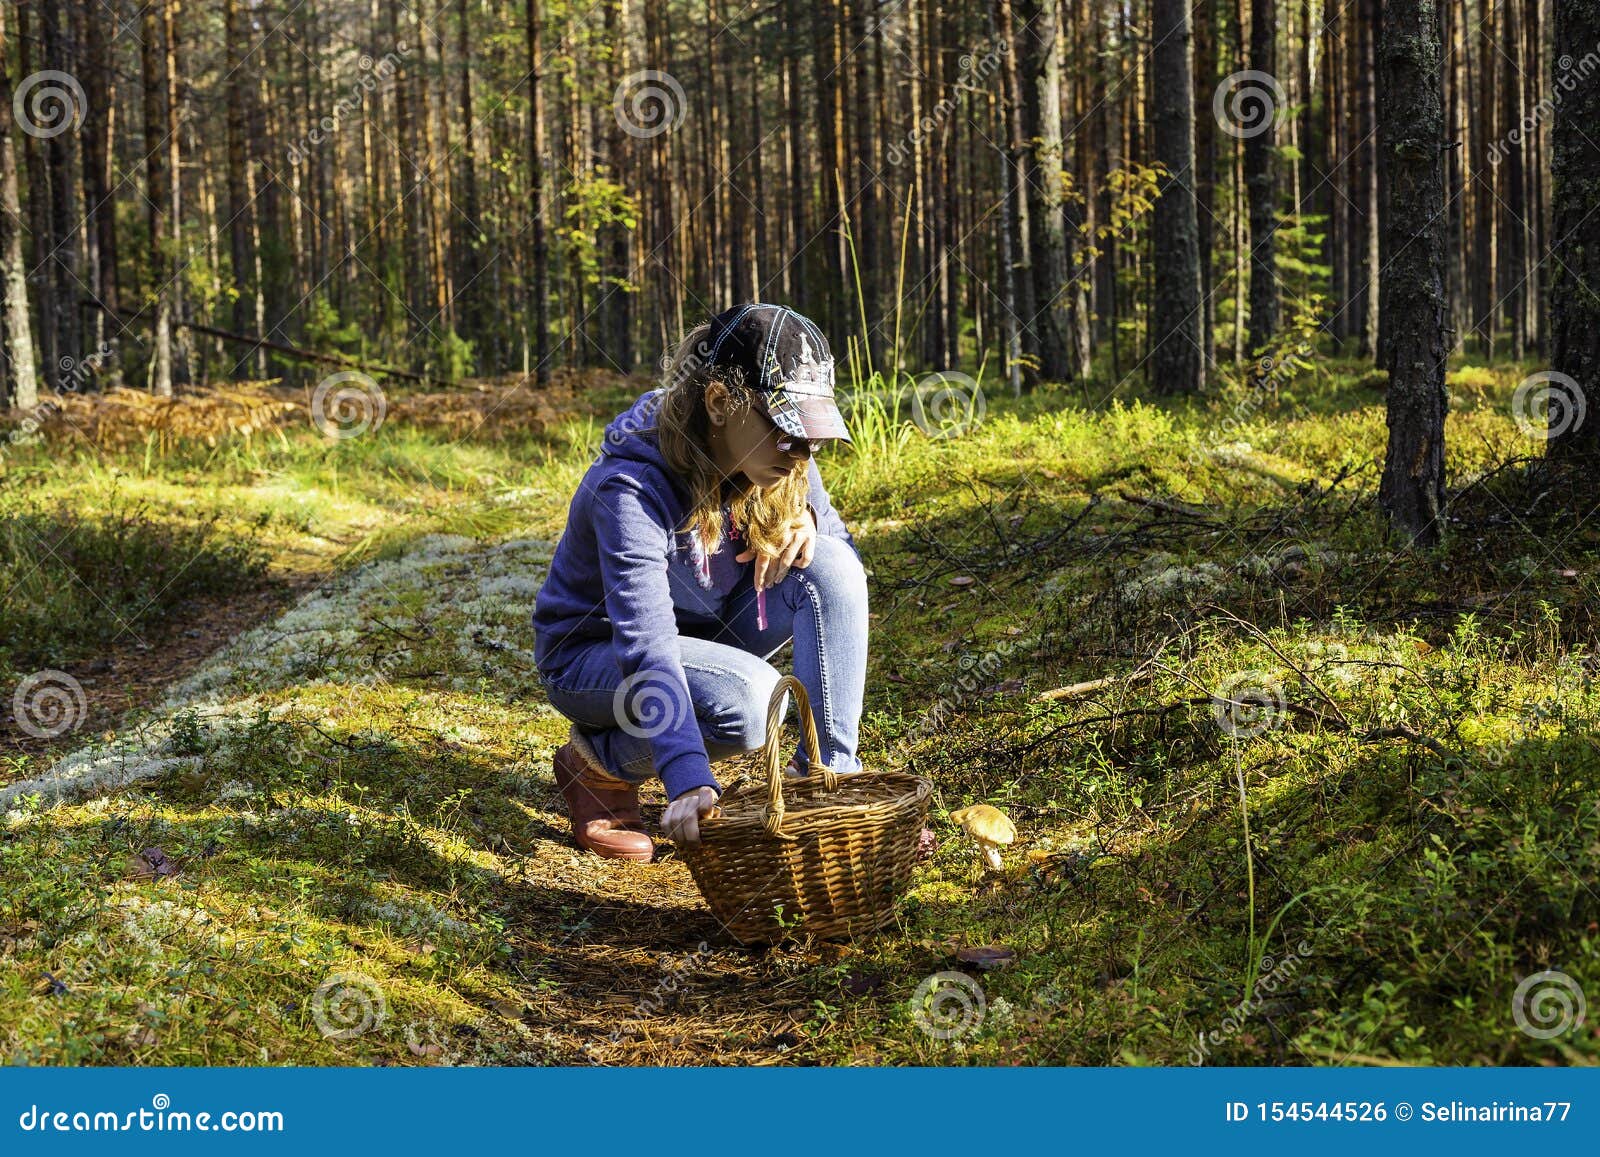 Девочка в лесу собирала грибы. Девушка собирает грибы в лесу. Девочка в лесу за грибами. Прогулка в лесу грибы. Девушки собирают грибы в осеннем лесу.